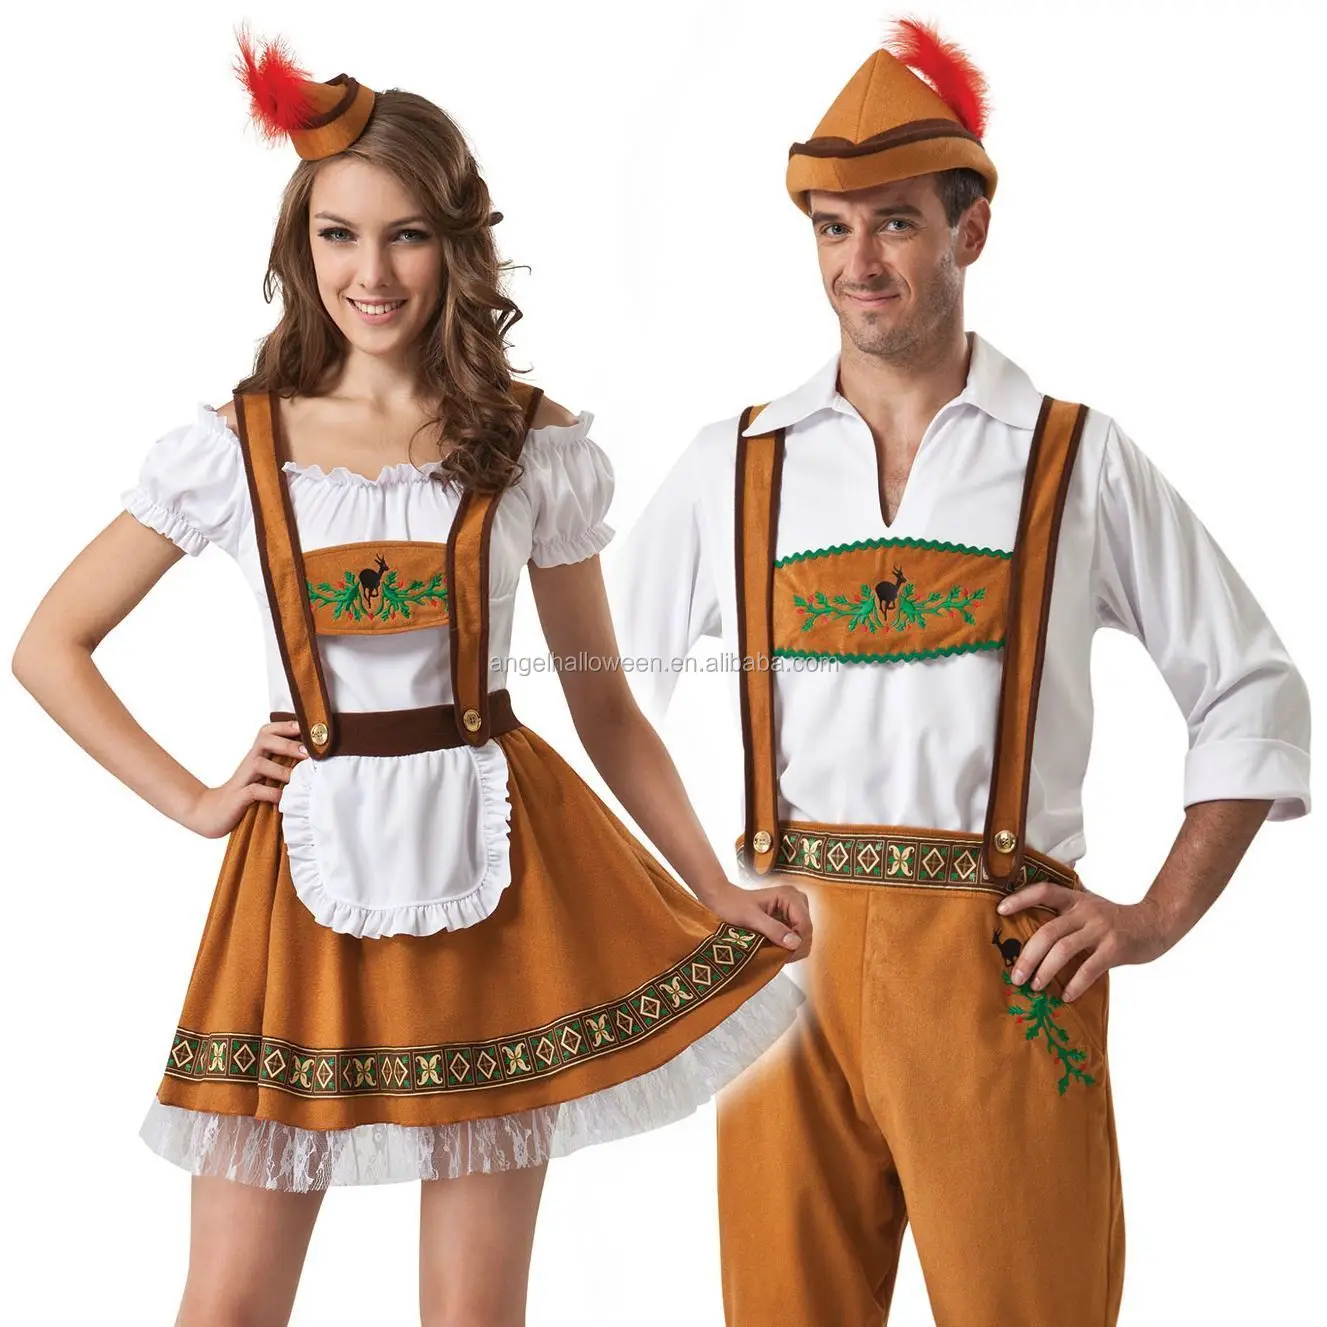 Fancy Dress Costume Couples German Beer 